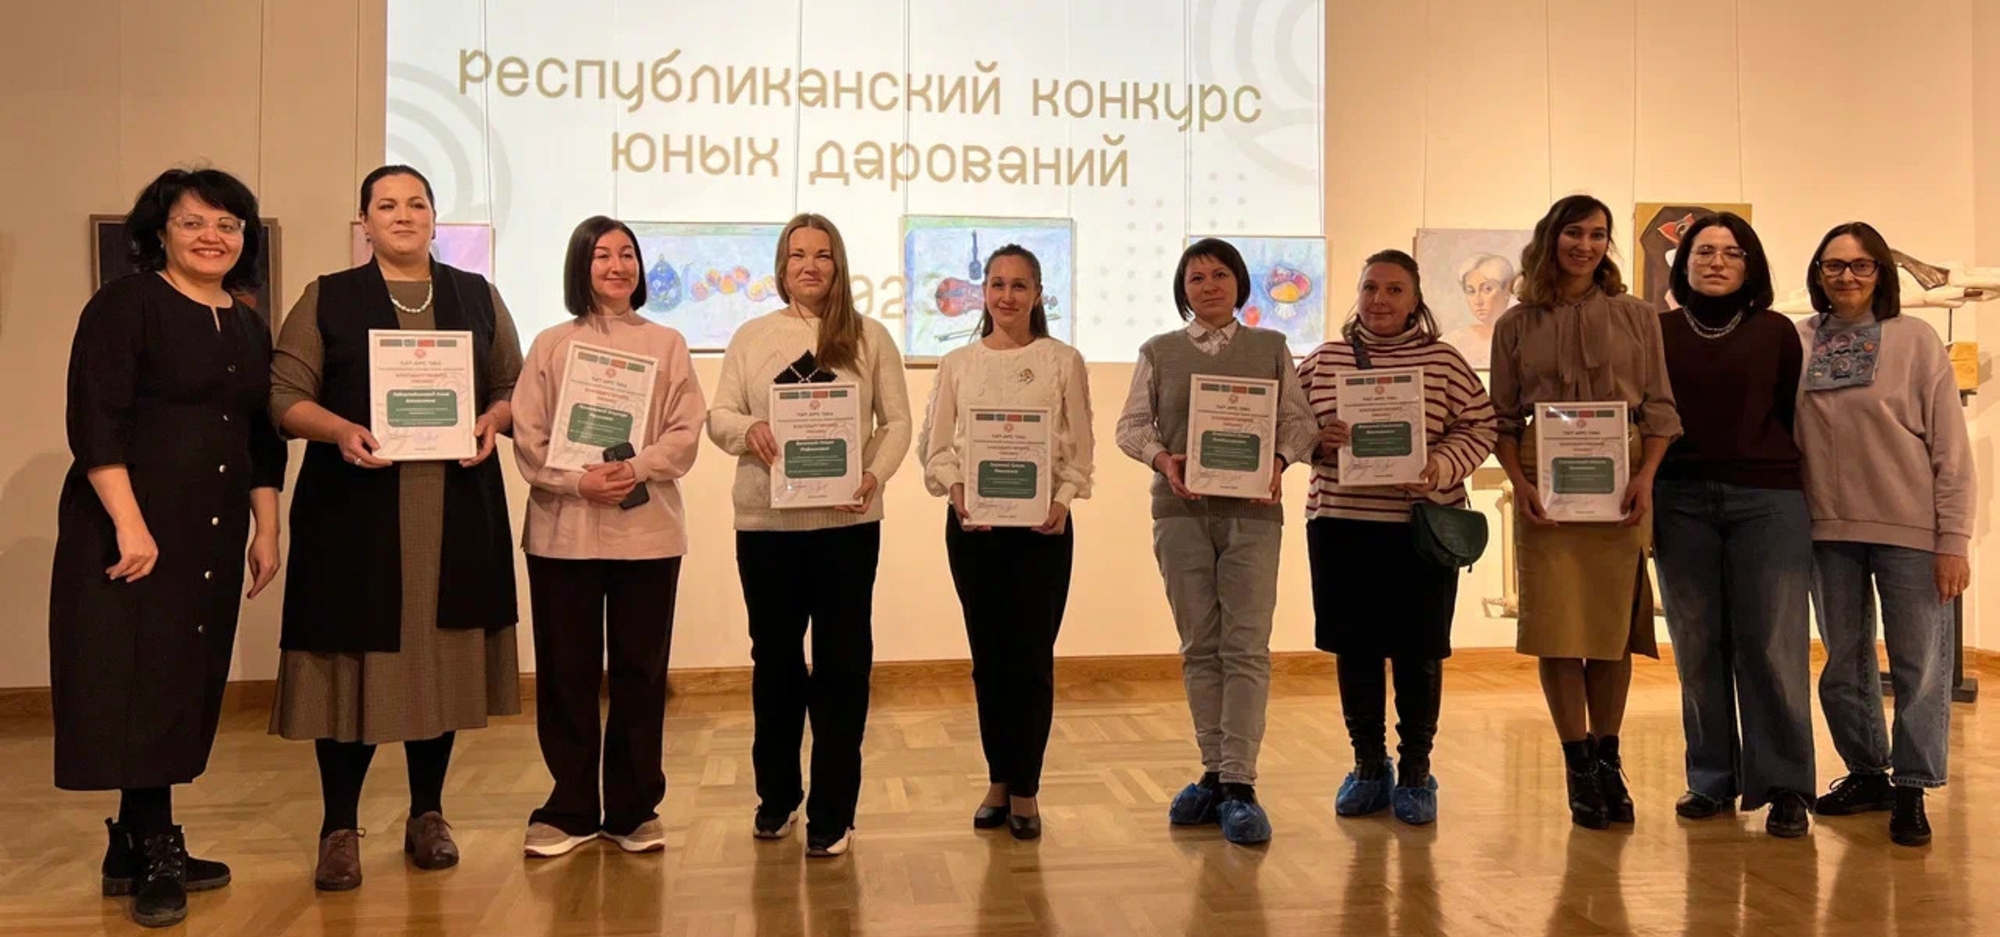 В Казани наградили победителей Республиканского конкурса юных дарований